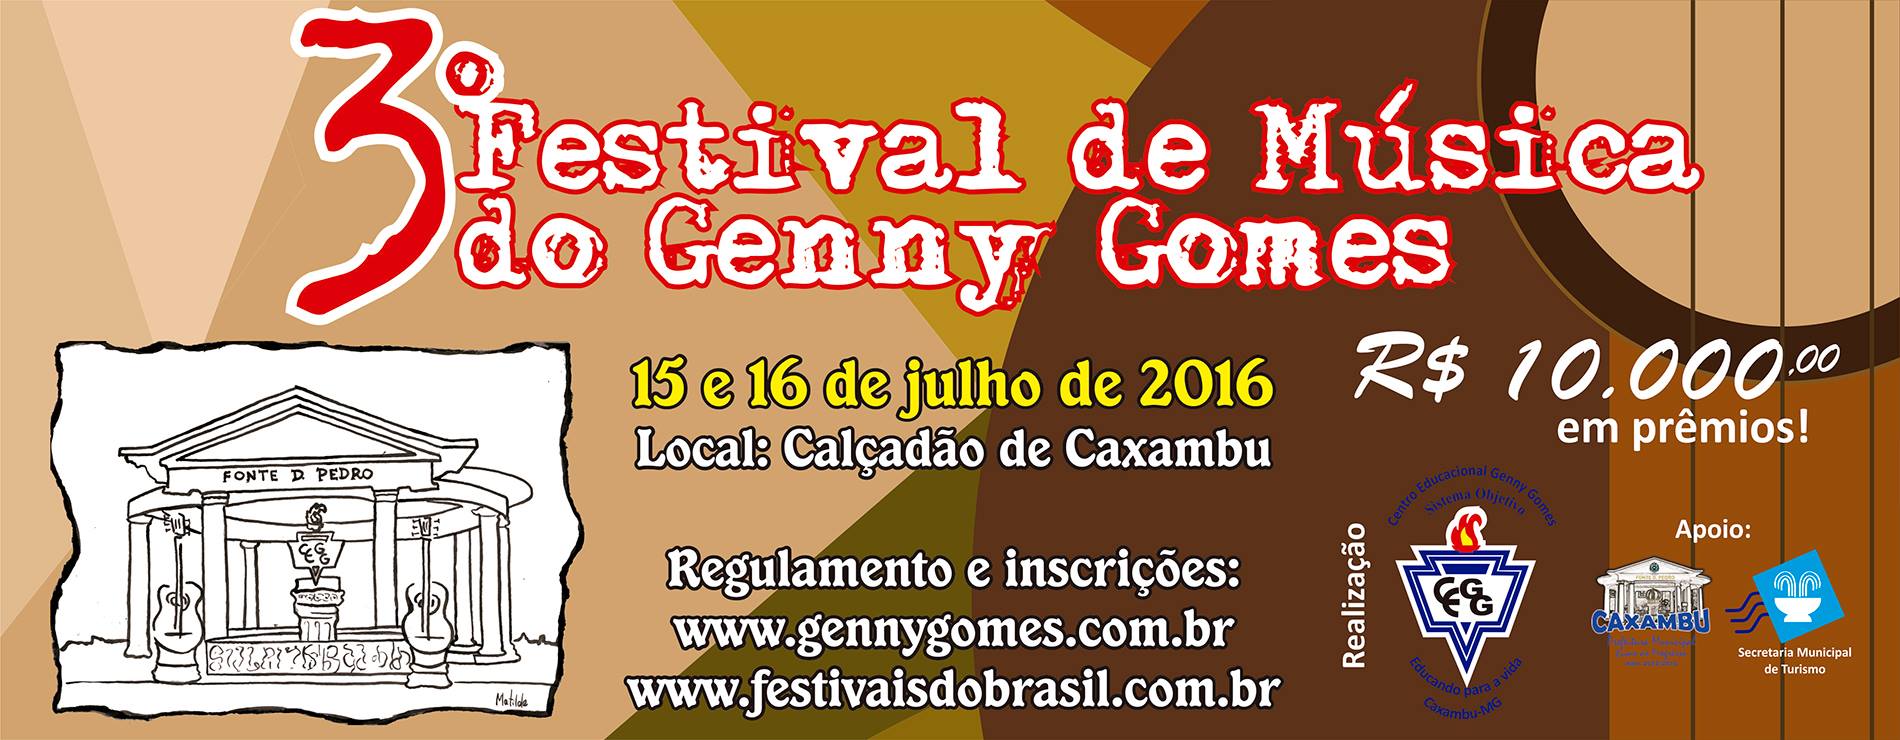 3º Festival de Música do Genny Gomes! Atração deste final de semana em Caxambu